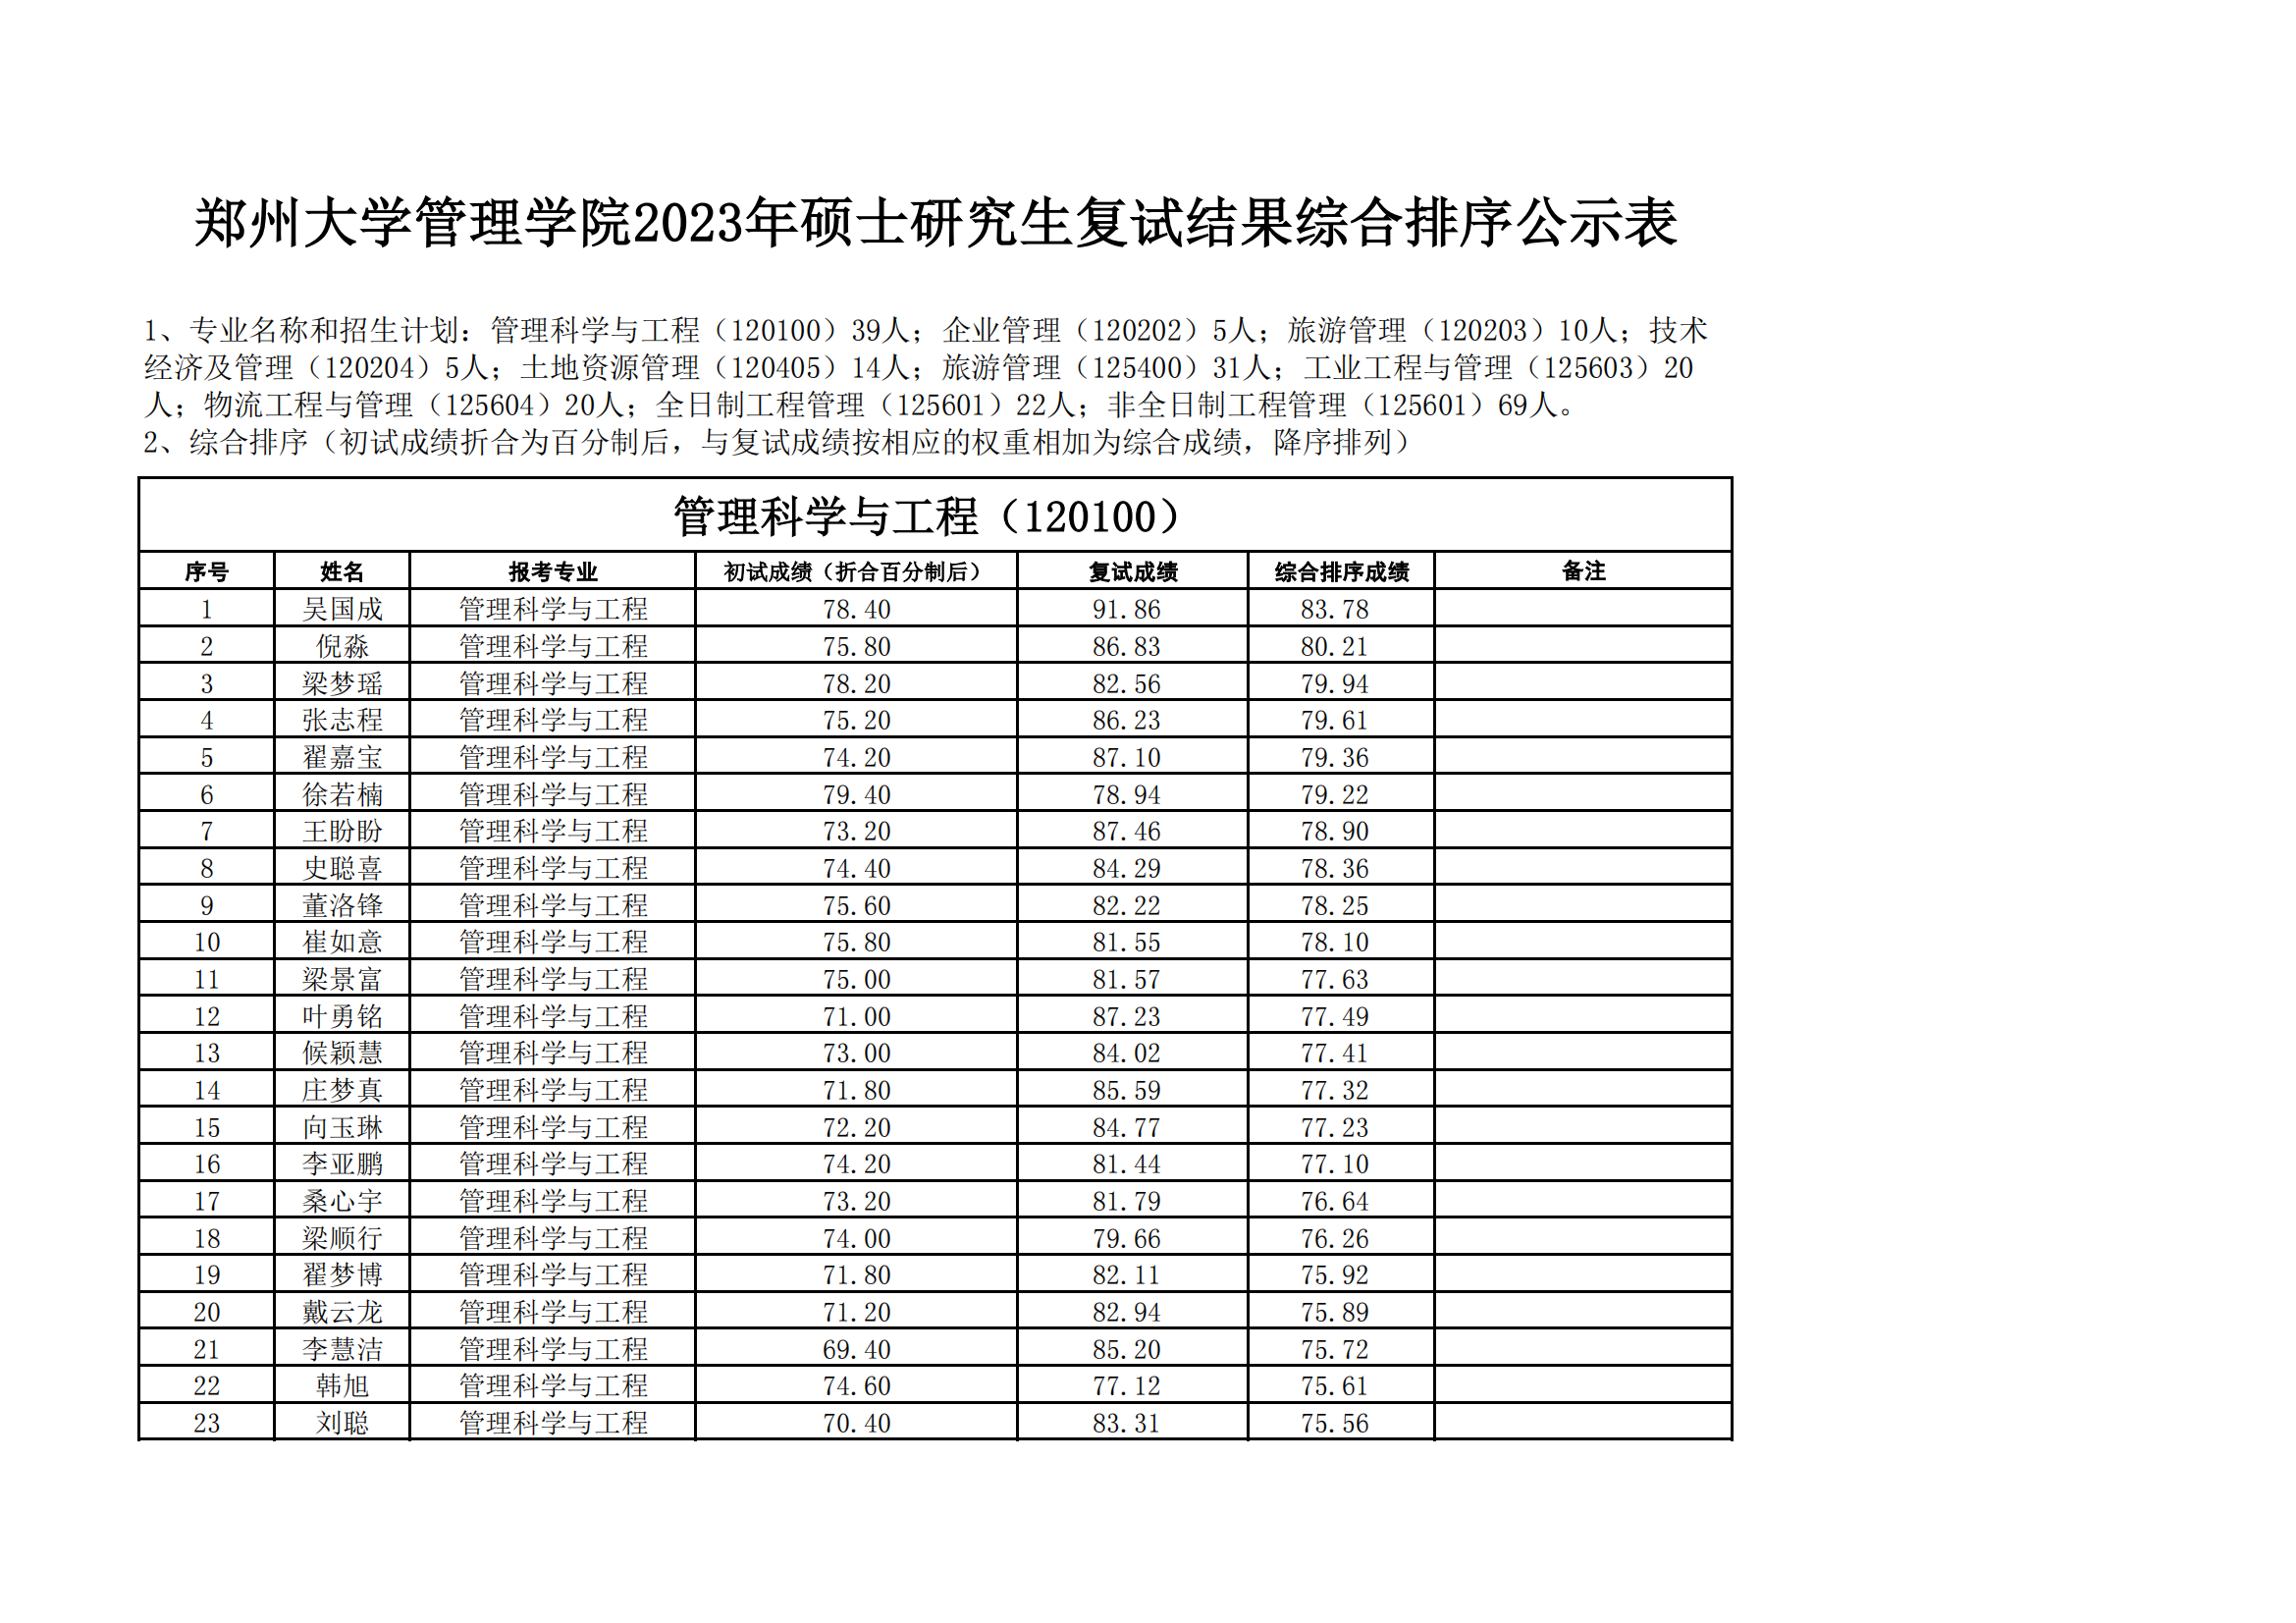 郑州大学管理学院2023年硕士研究生复试结果综合排序公示表_00.png